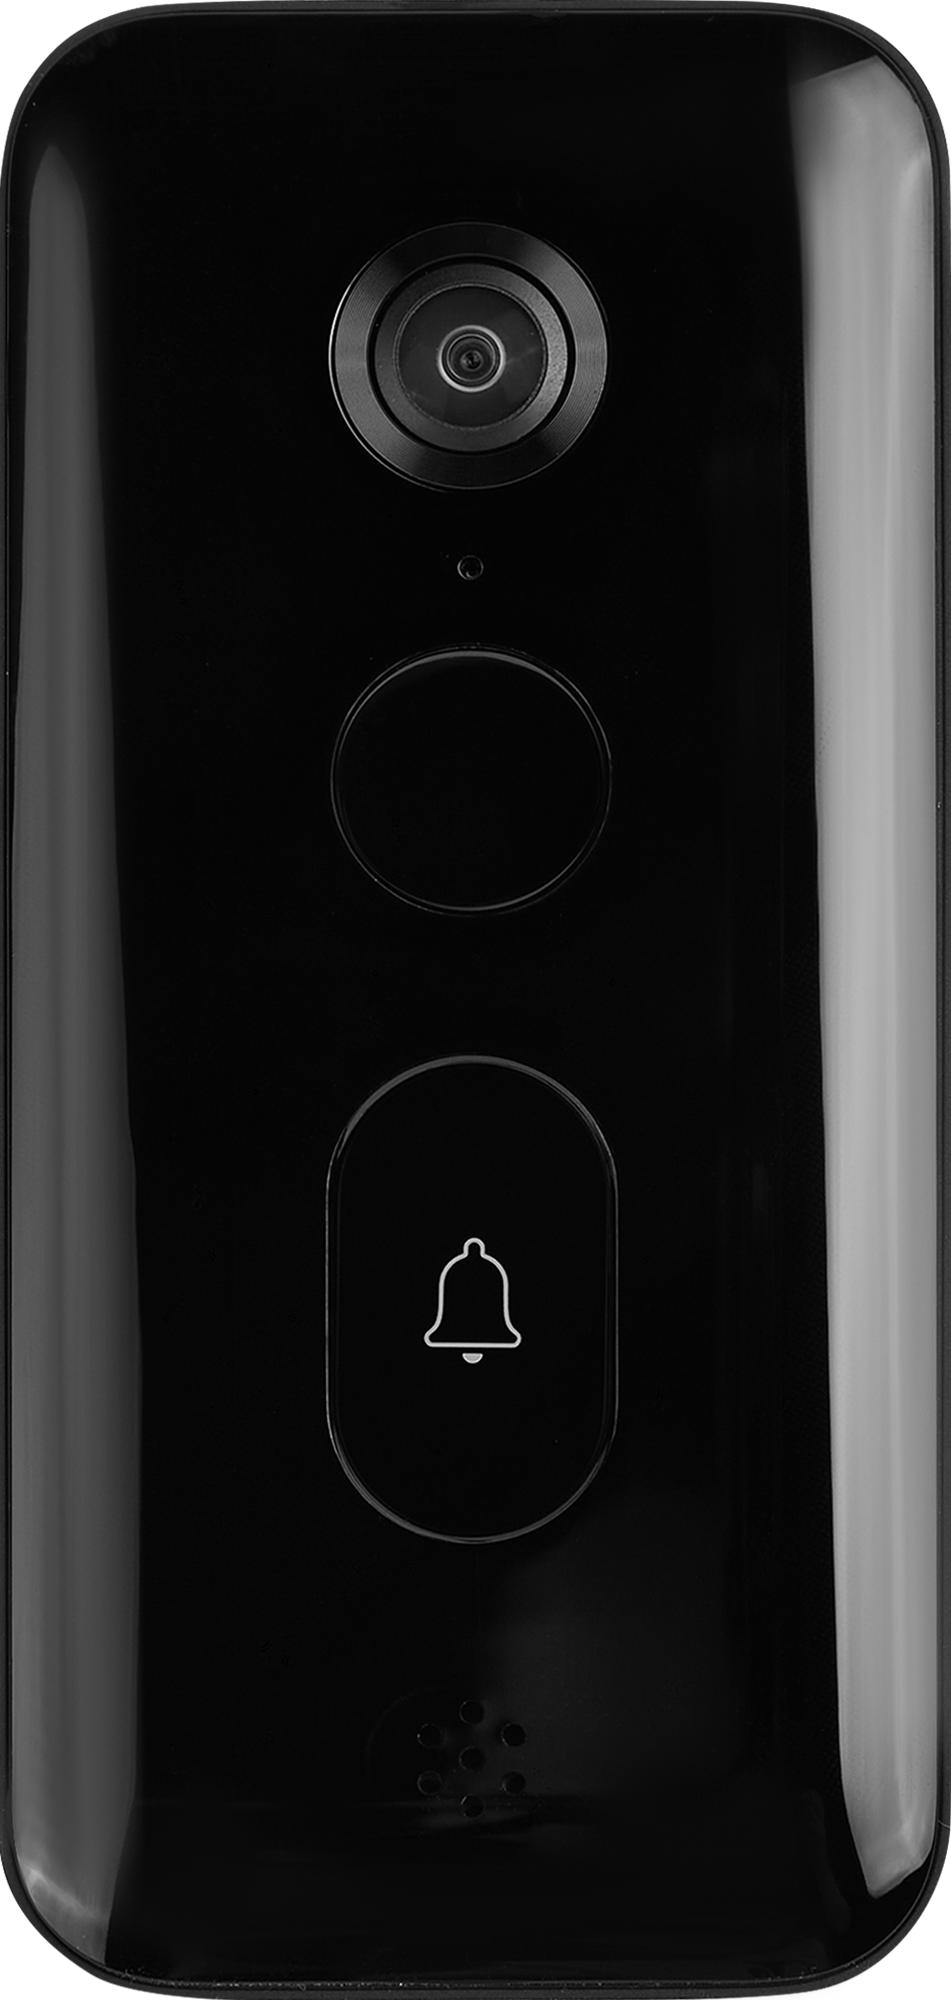 Xiaomi Smart Doorbell 3 bhr5416gl. Звонок дверной Xiaomi Smart Doorbell 3. Умный дверной звонок Xiaomi Smart Doorbell 3 черный bhr5416gl. Xiaomi Smart Doorbell 3 bhr5416gl русифицировпнный. Звонок xiaomi doorbell 3